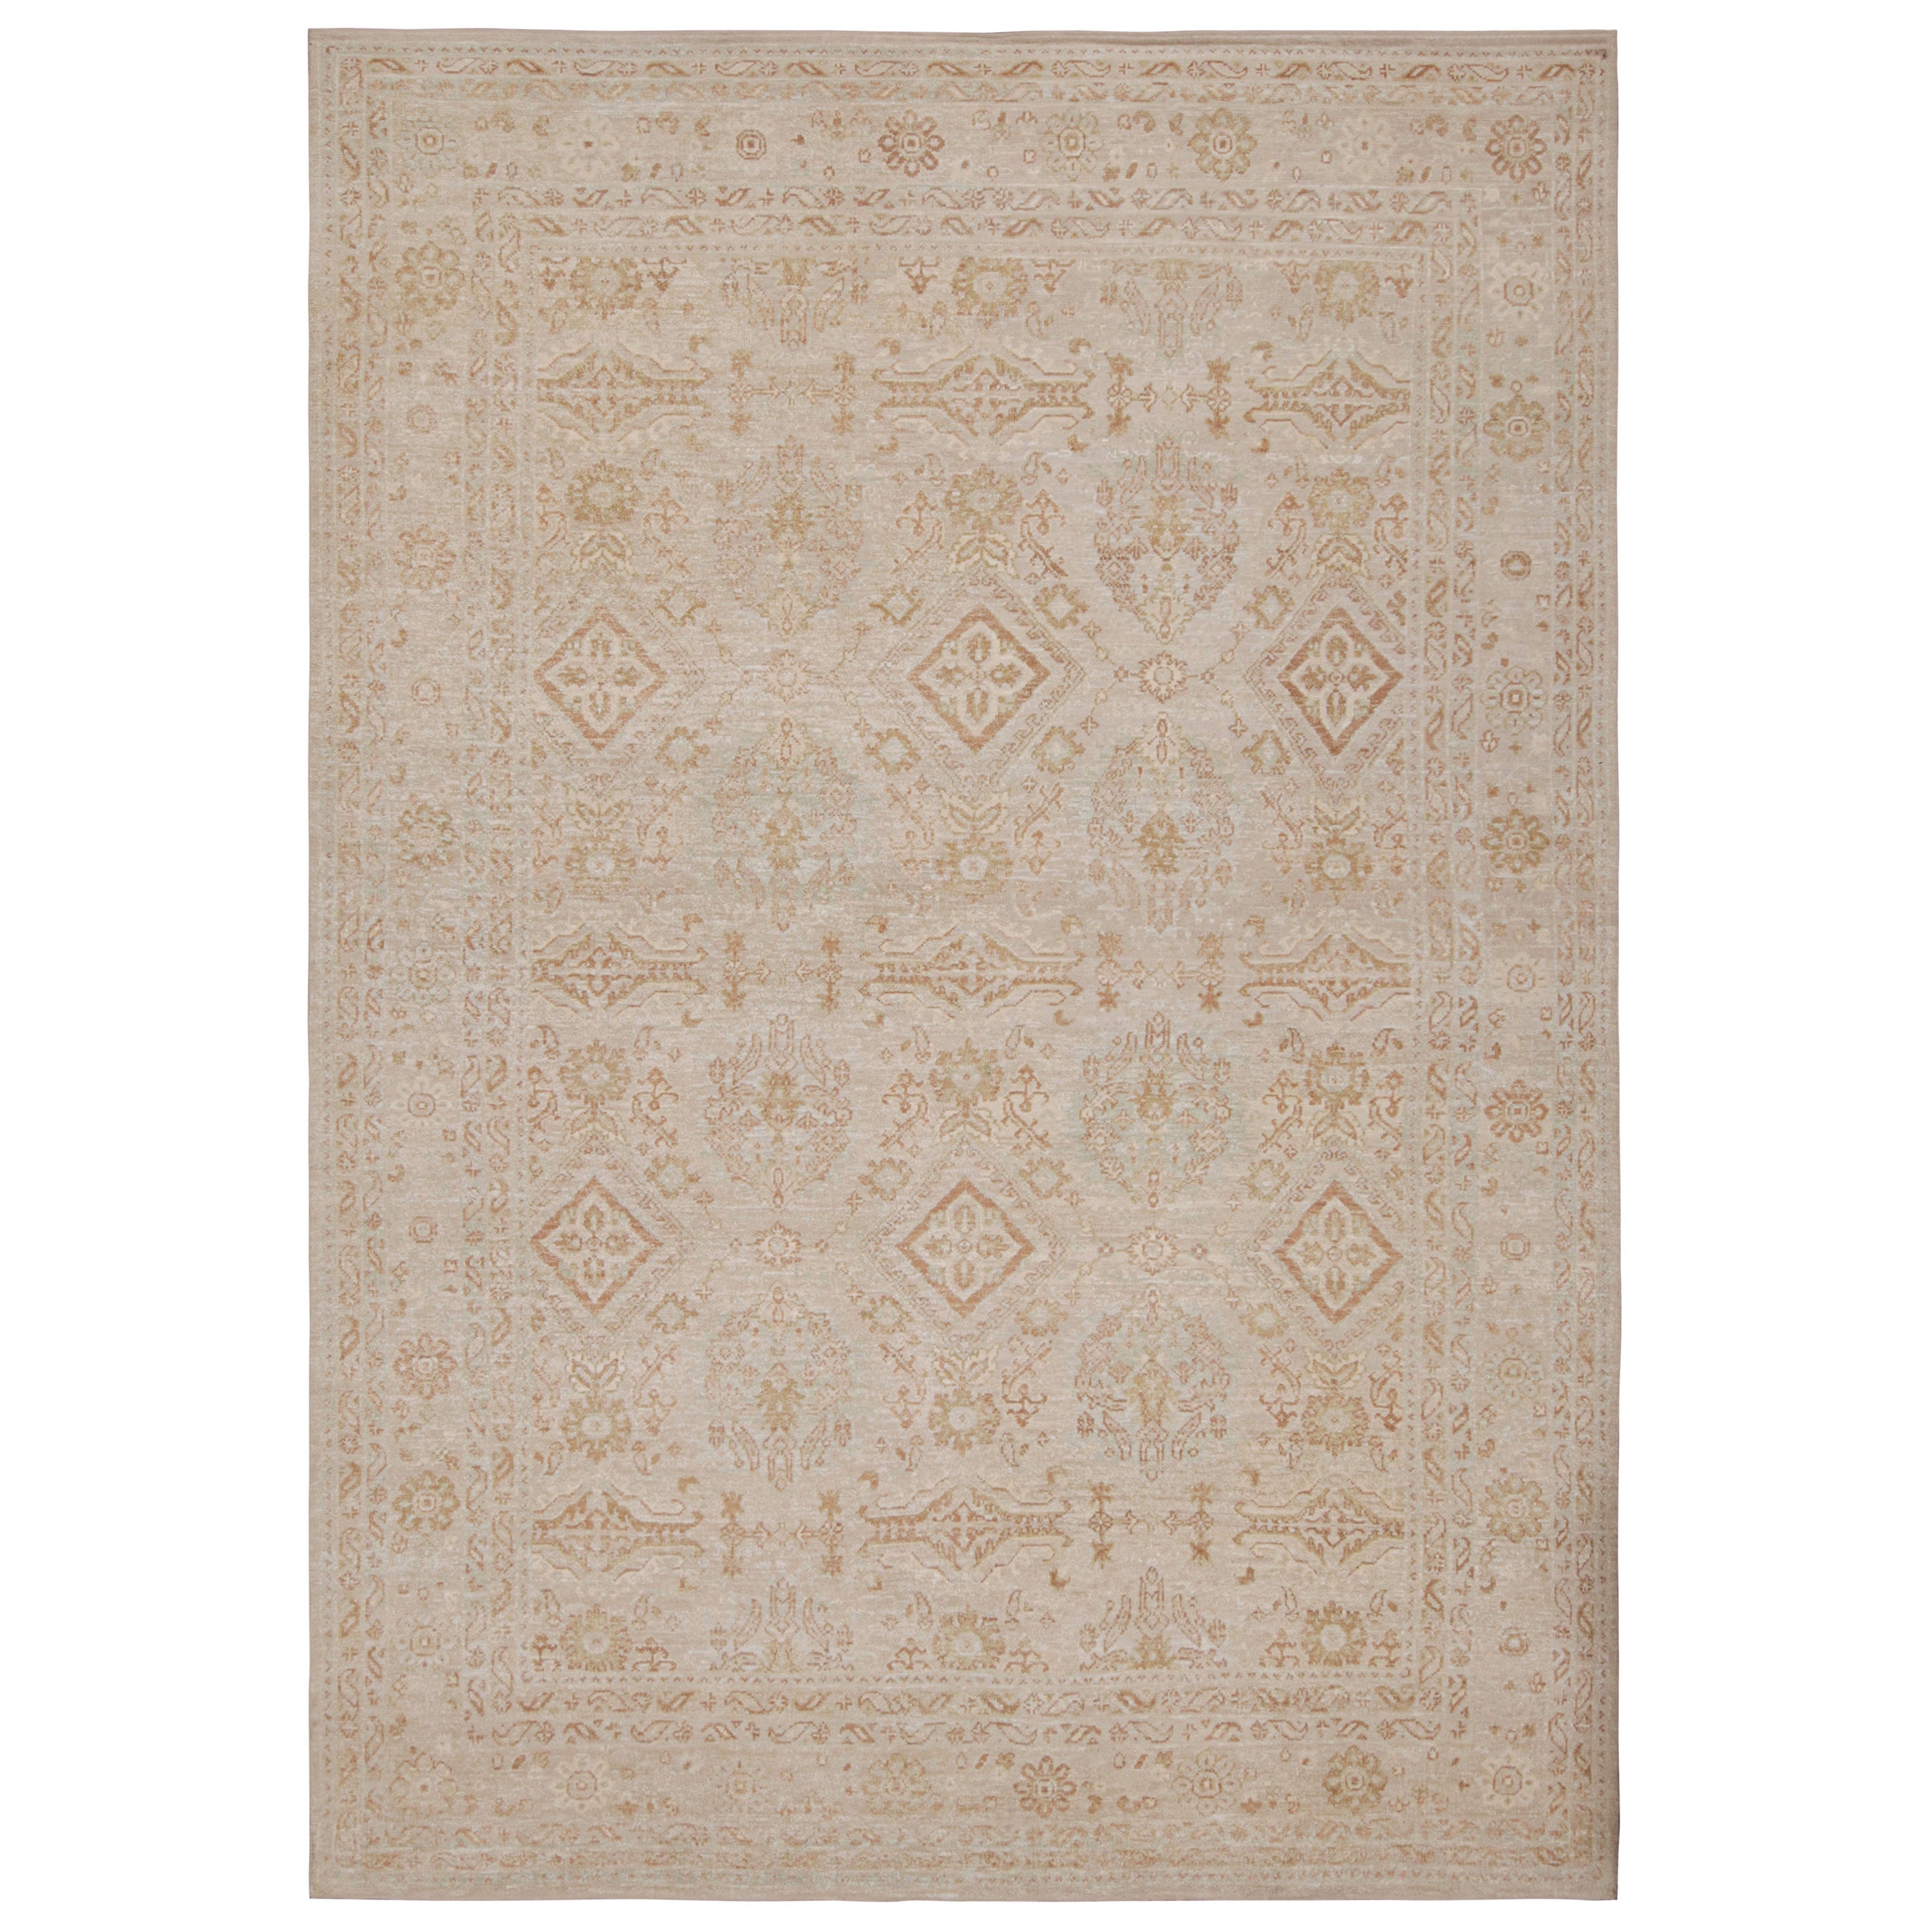 Rug & Kilim's Oushak Style Teppich in Grau und Beige mit geometrischem Muster